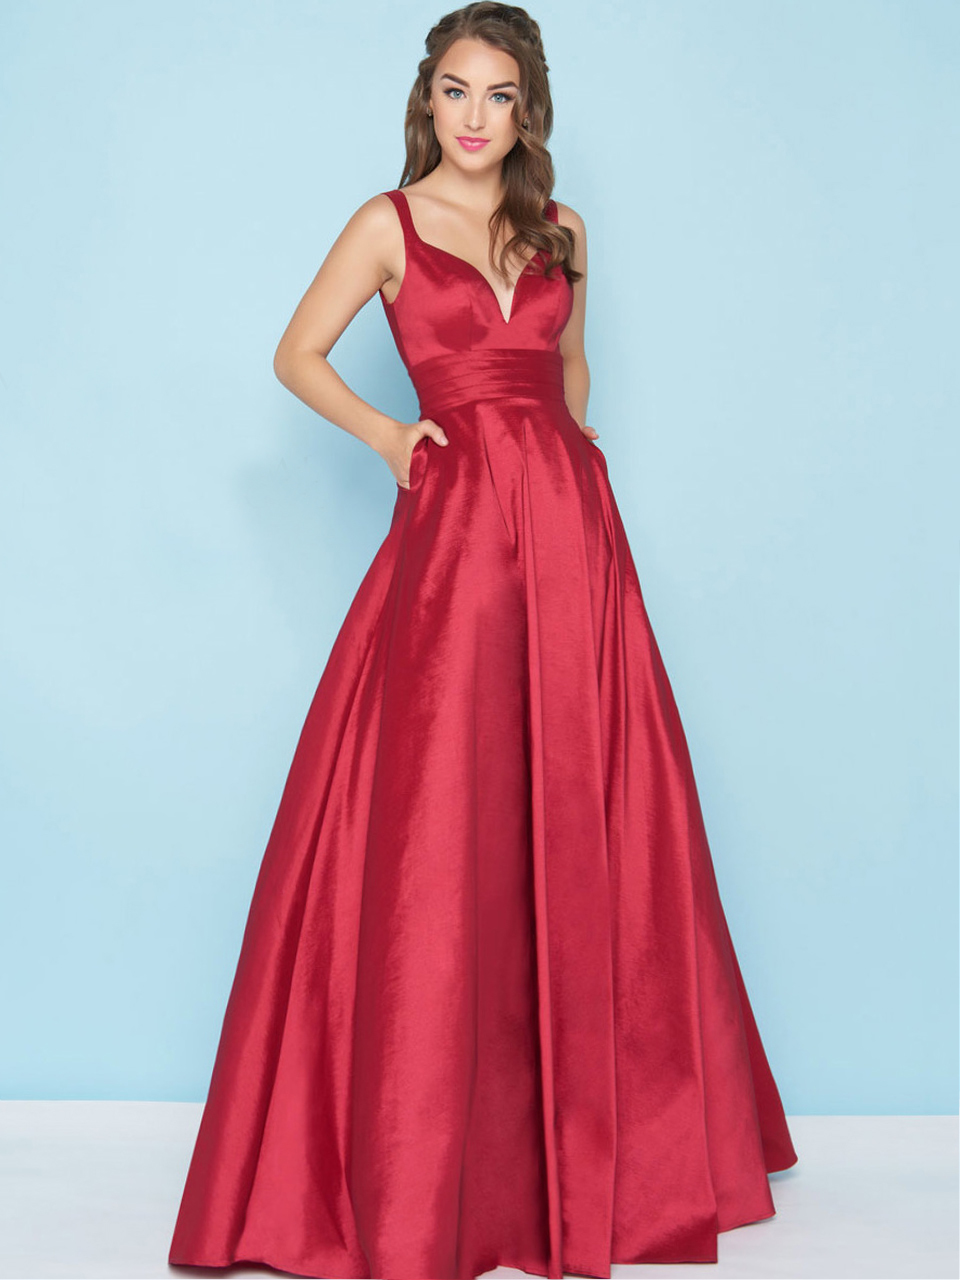 Красное платье в пол с пышной юбкой (63 фото)